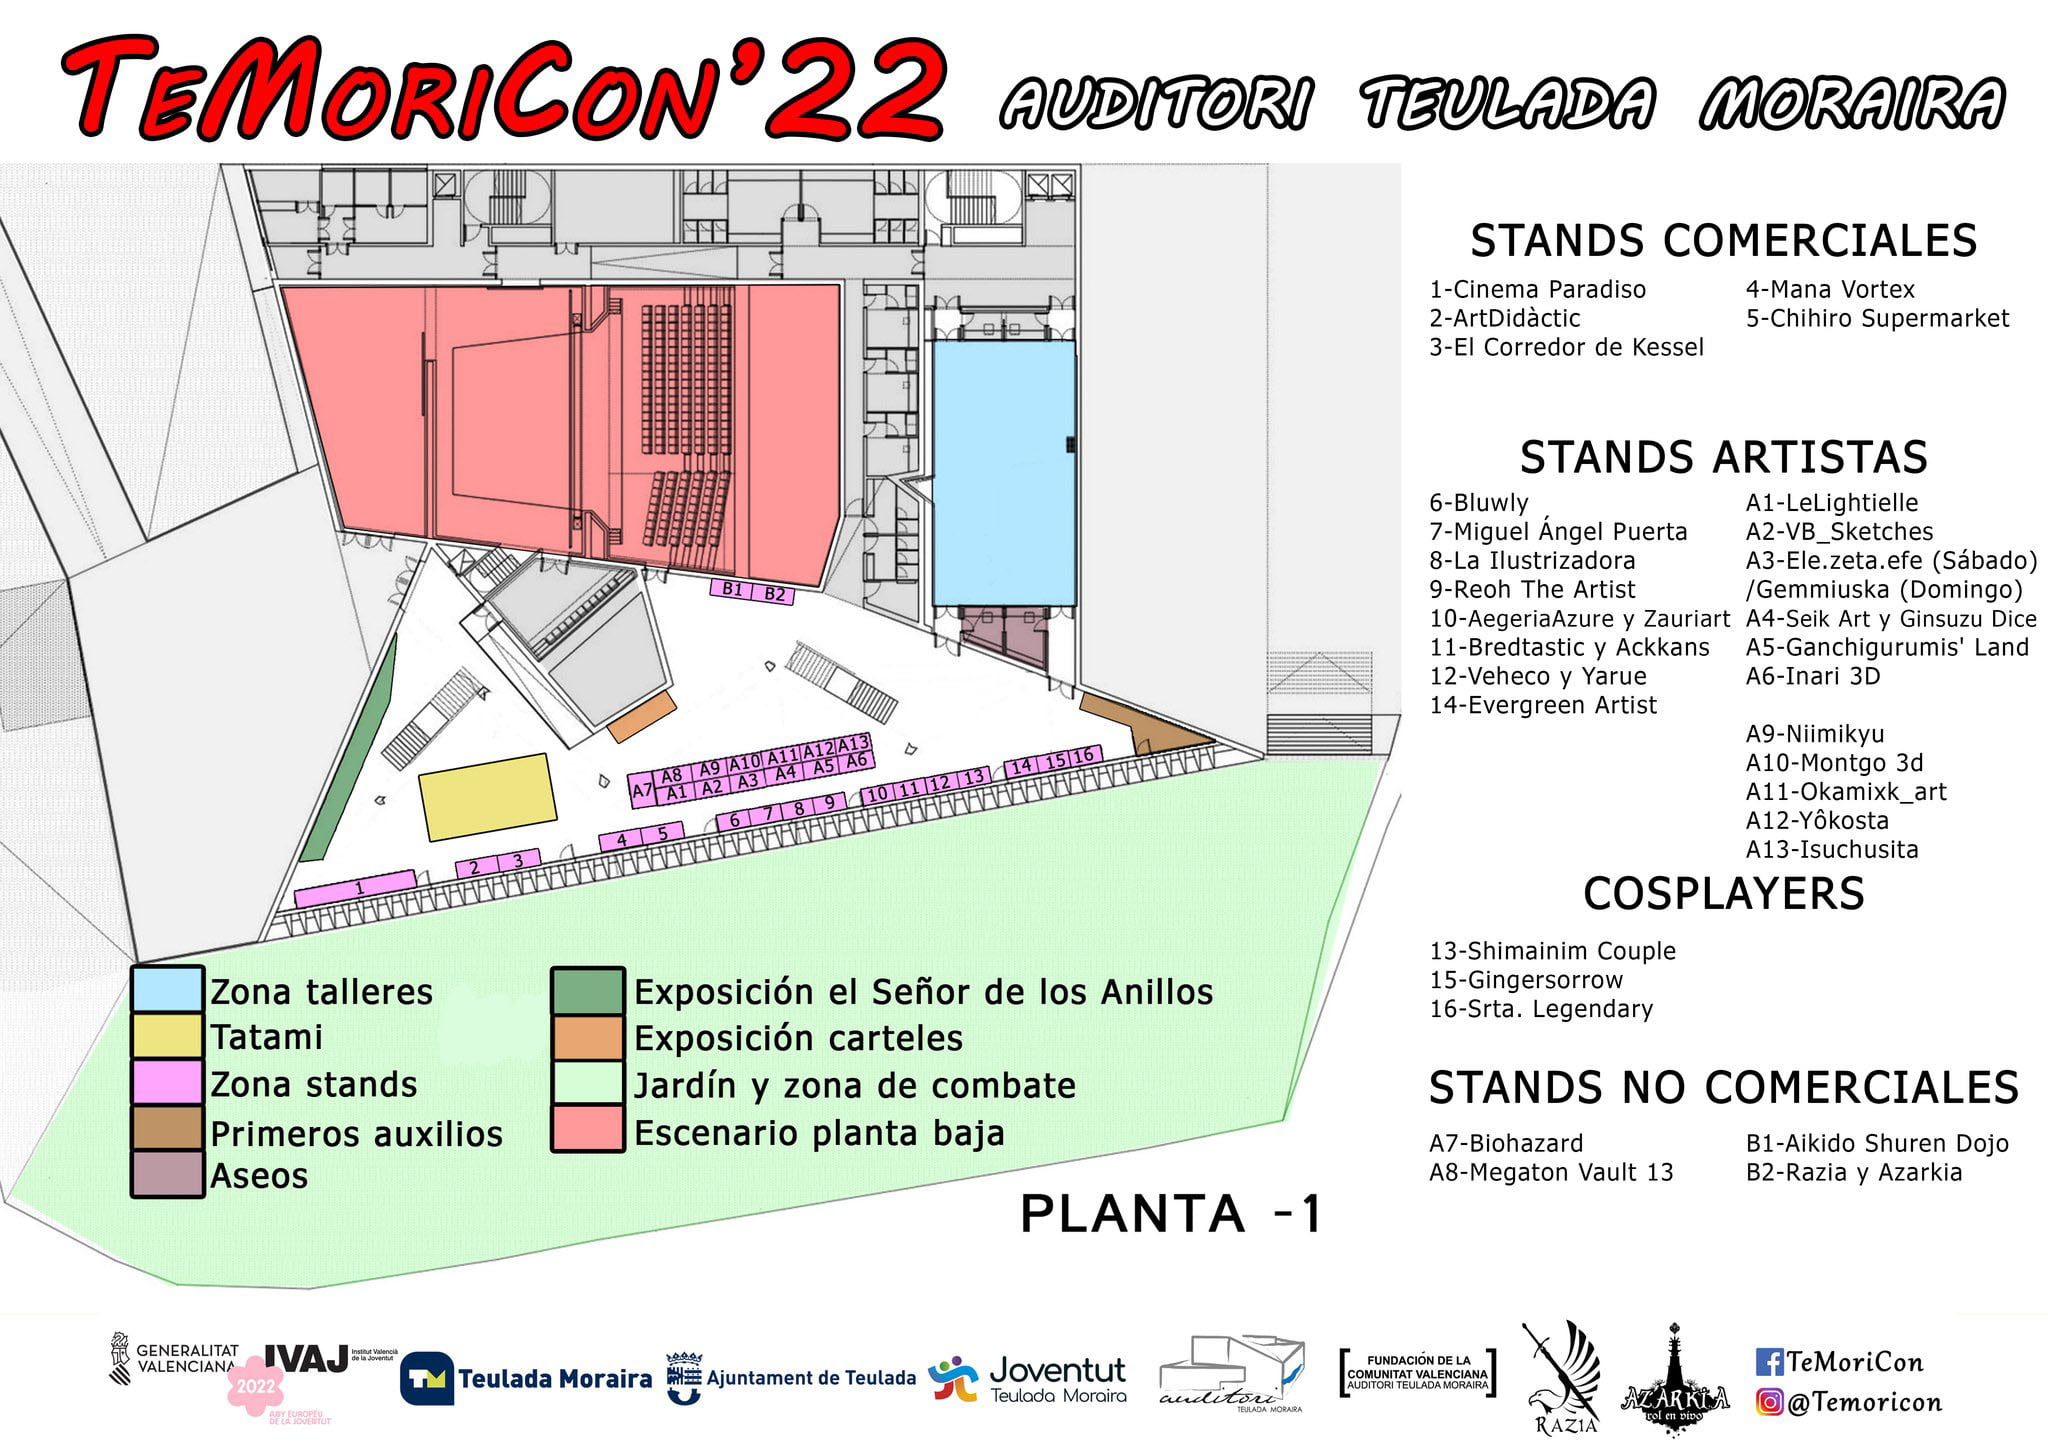 Plano de stands y artistas del TeMoriCon 2022 en la planta 1 del Auditori de Teulada-Moraira